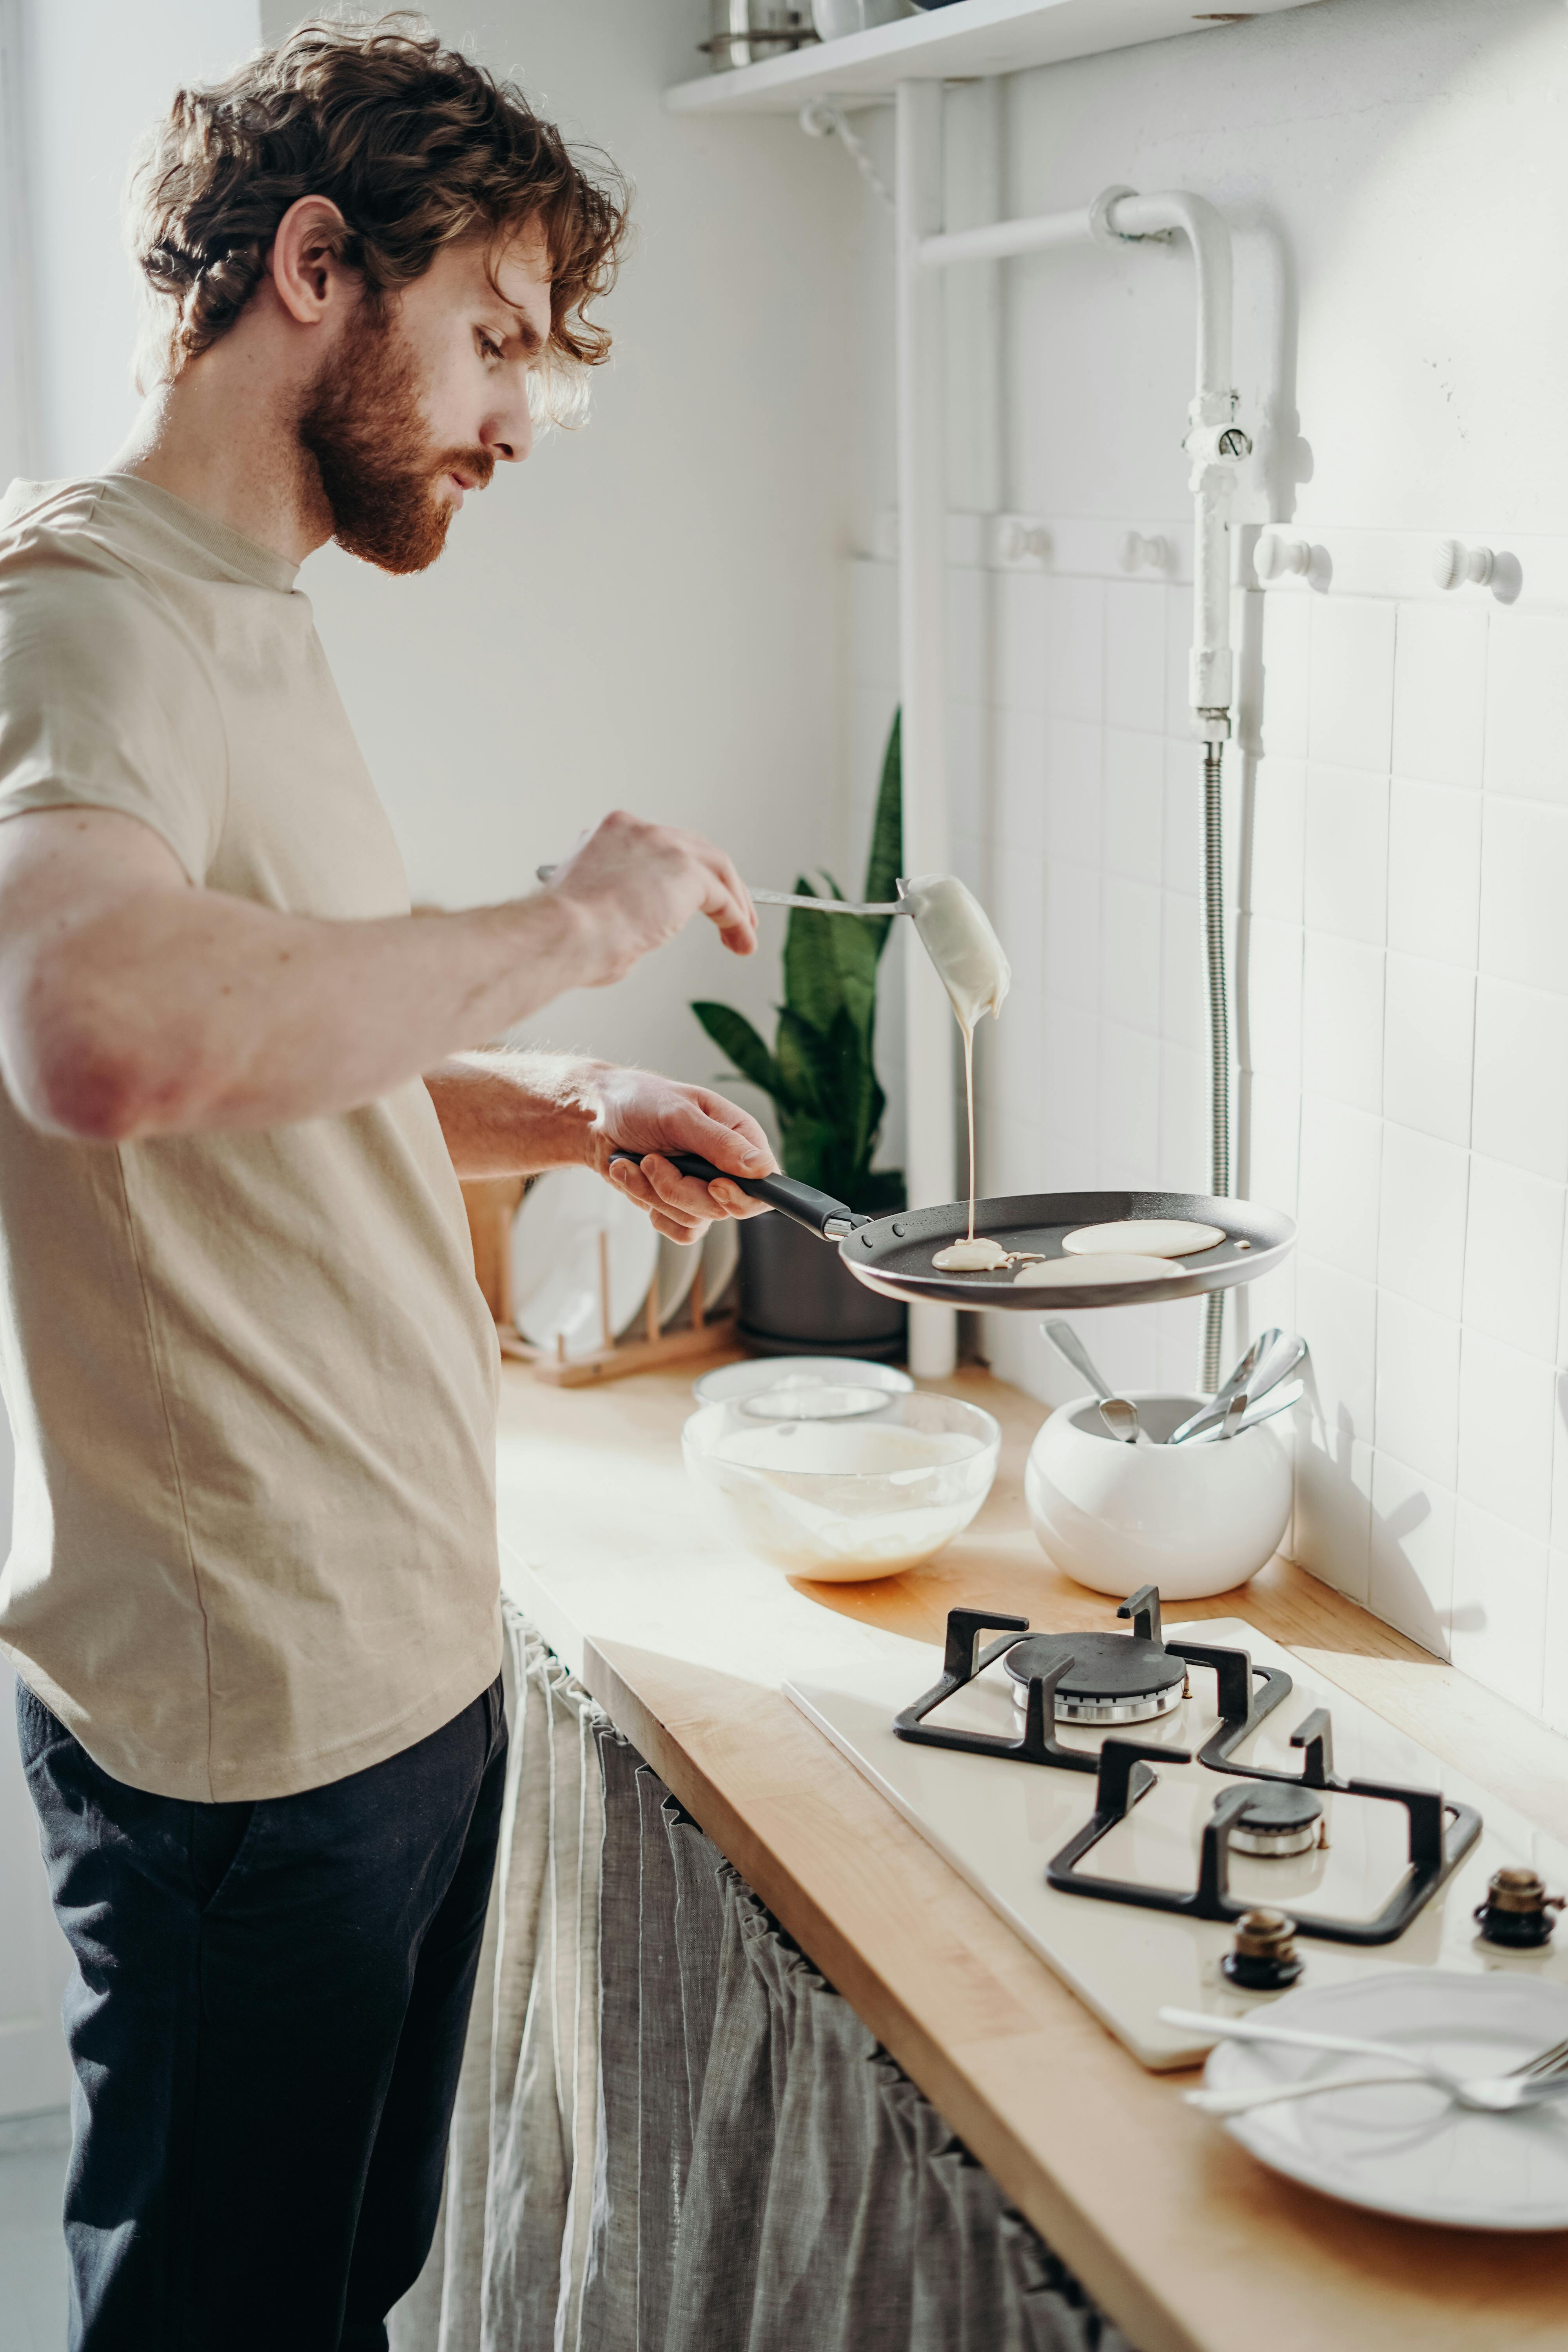 Un homme en train de préparer un repas devant un fourneau | Source : Pexels